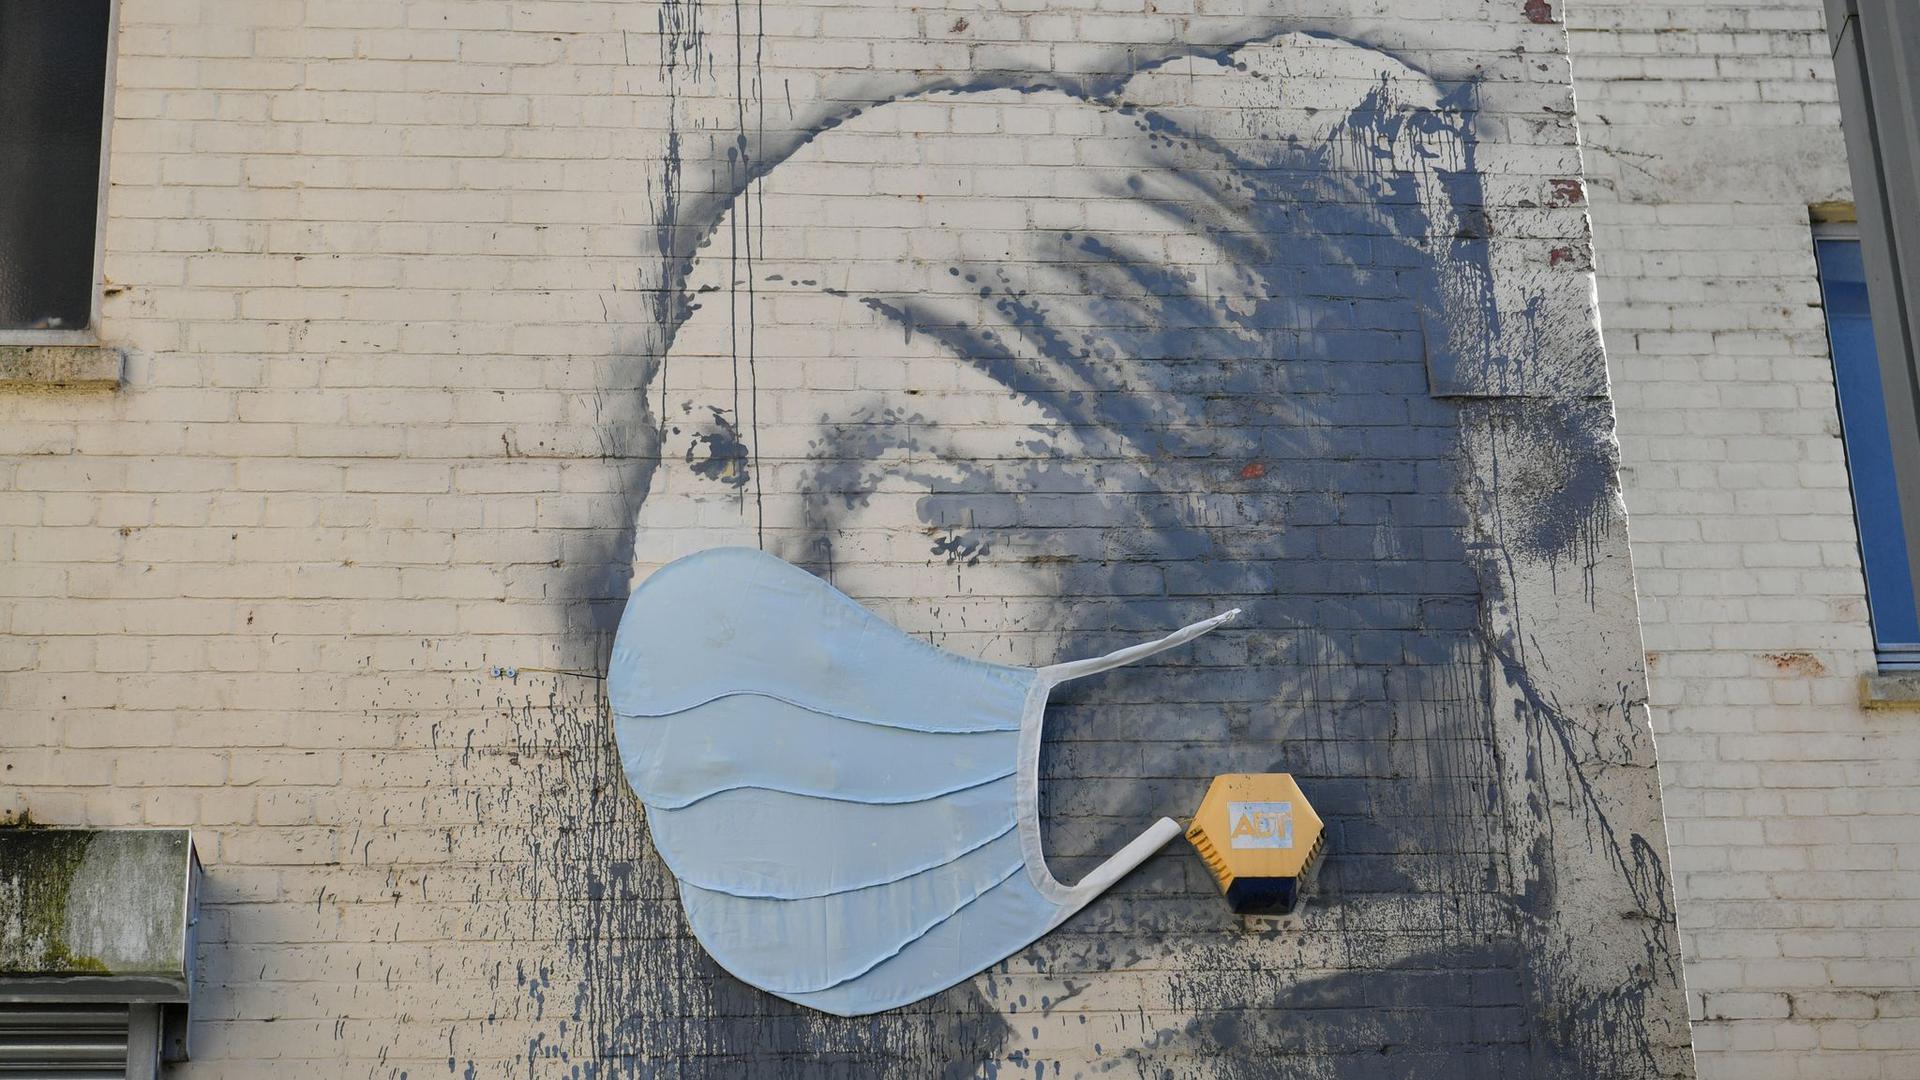 Das Wandgemälde „Das Mädchen mit dem Perlenohrring“ in Bristol, das von Banksy stammen soll, hat als Reaktion auf die Coronavirus-Pandemie eine Gesichtsmaske bekommen.